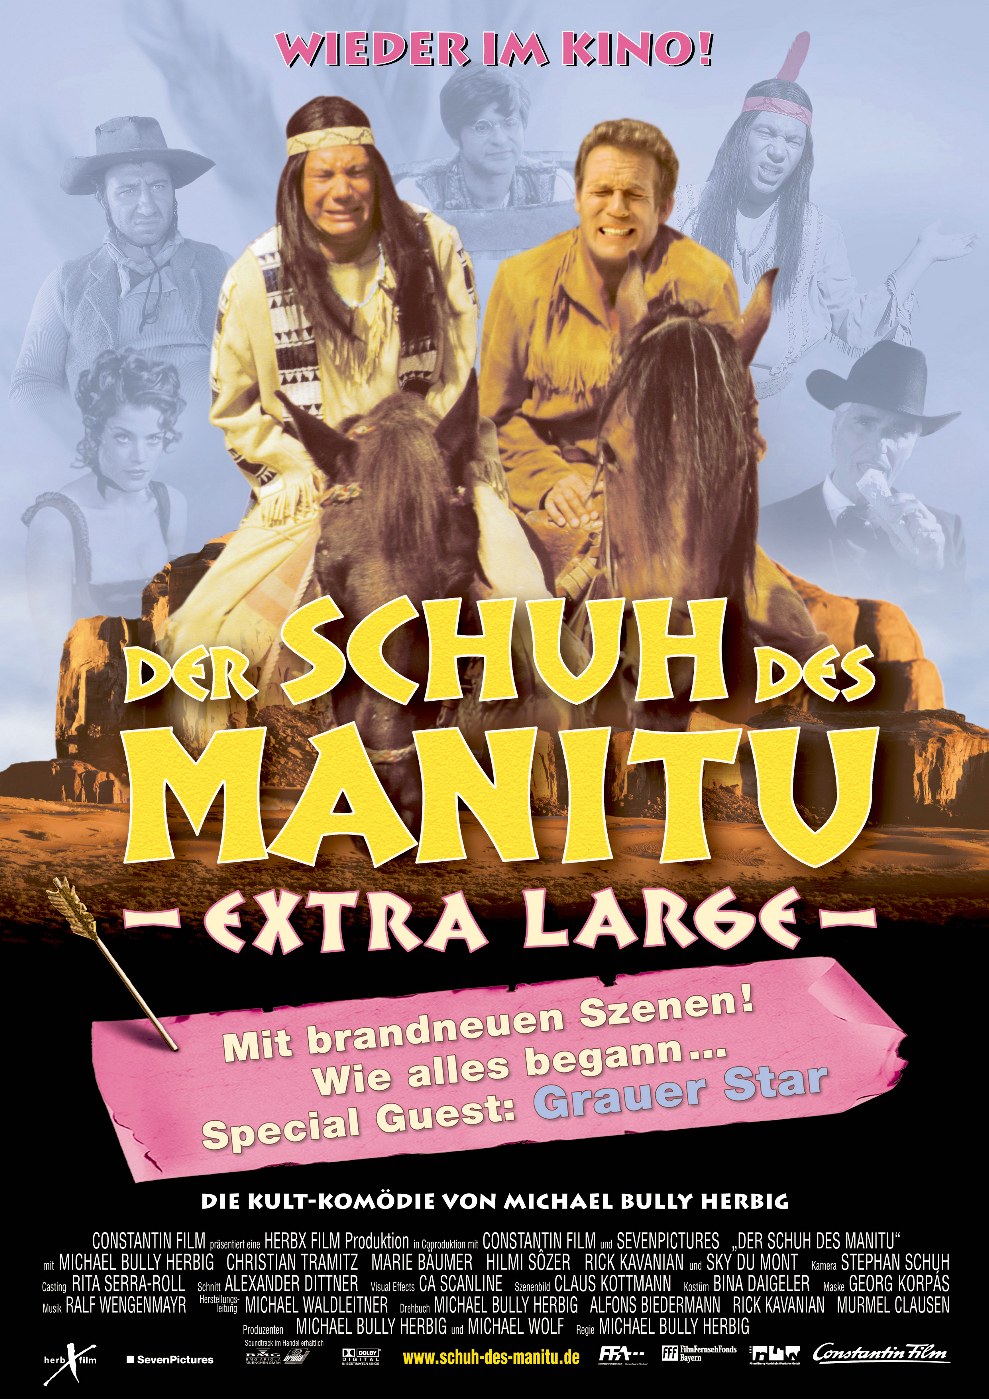 Der Schuh des Manitu movie poster